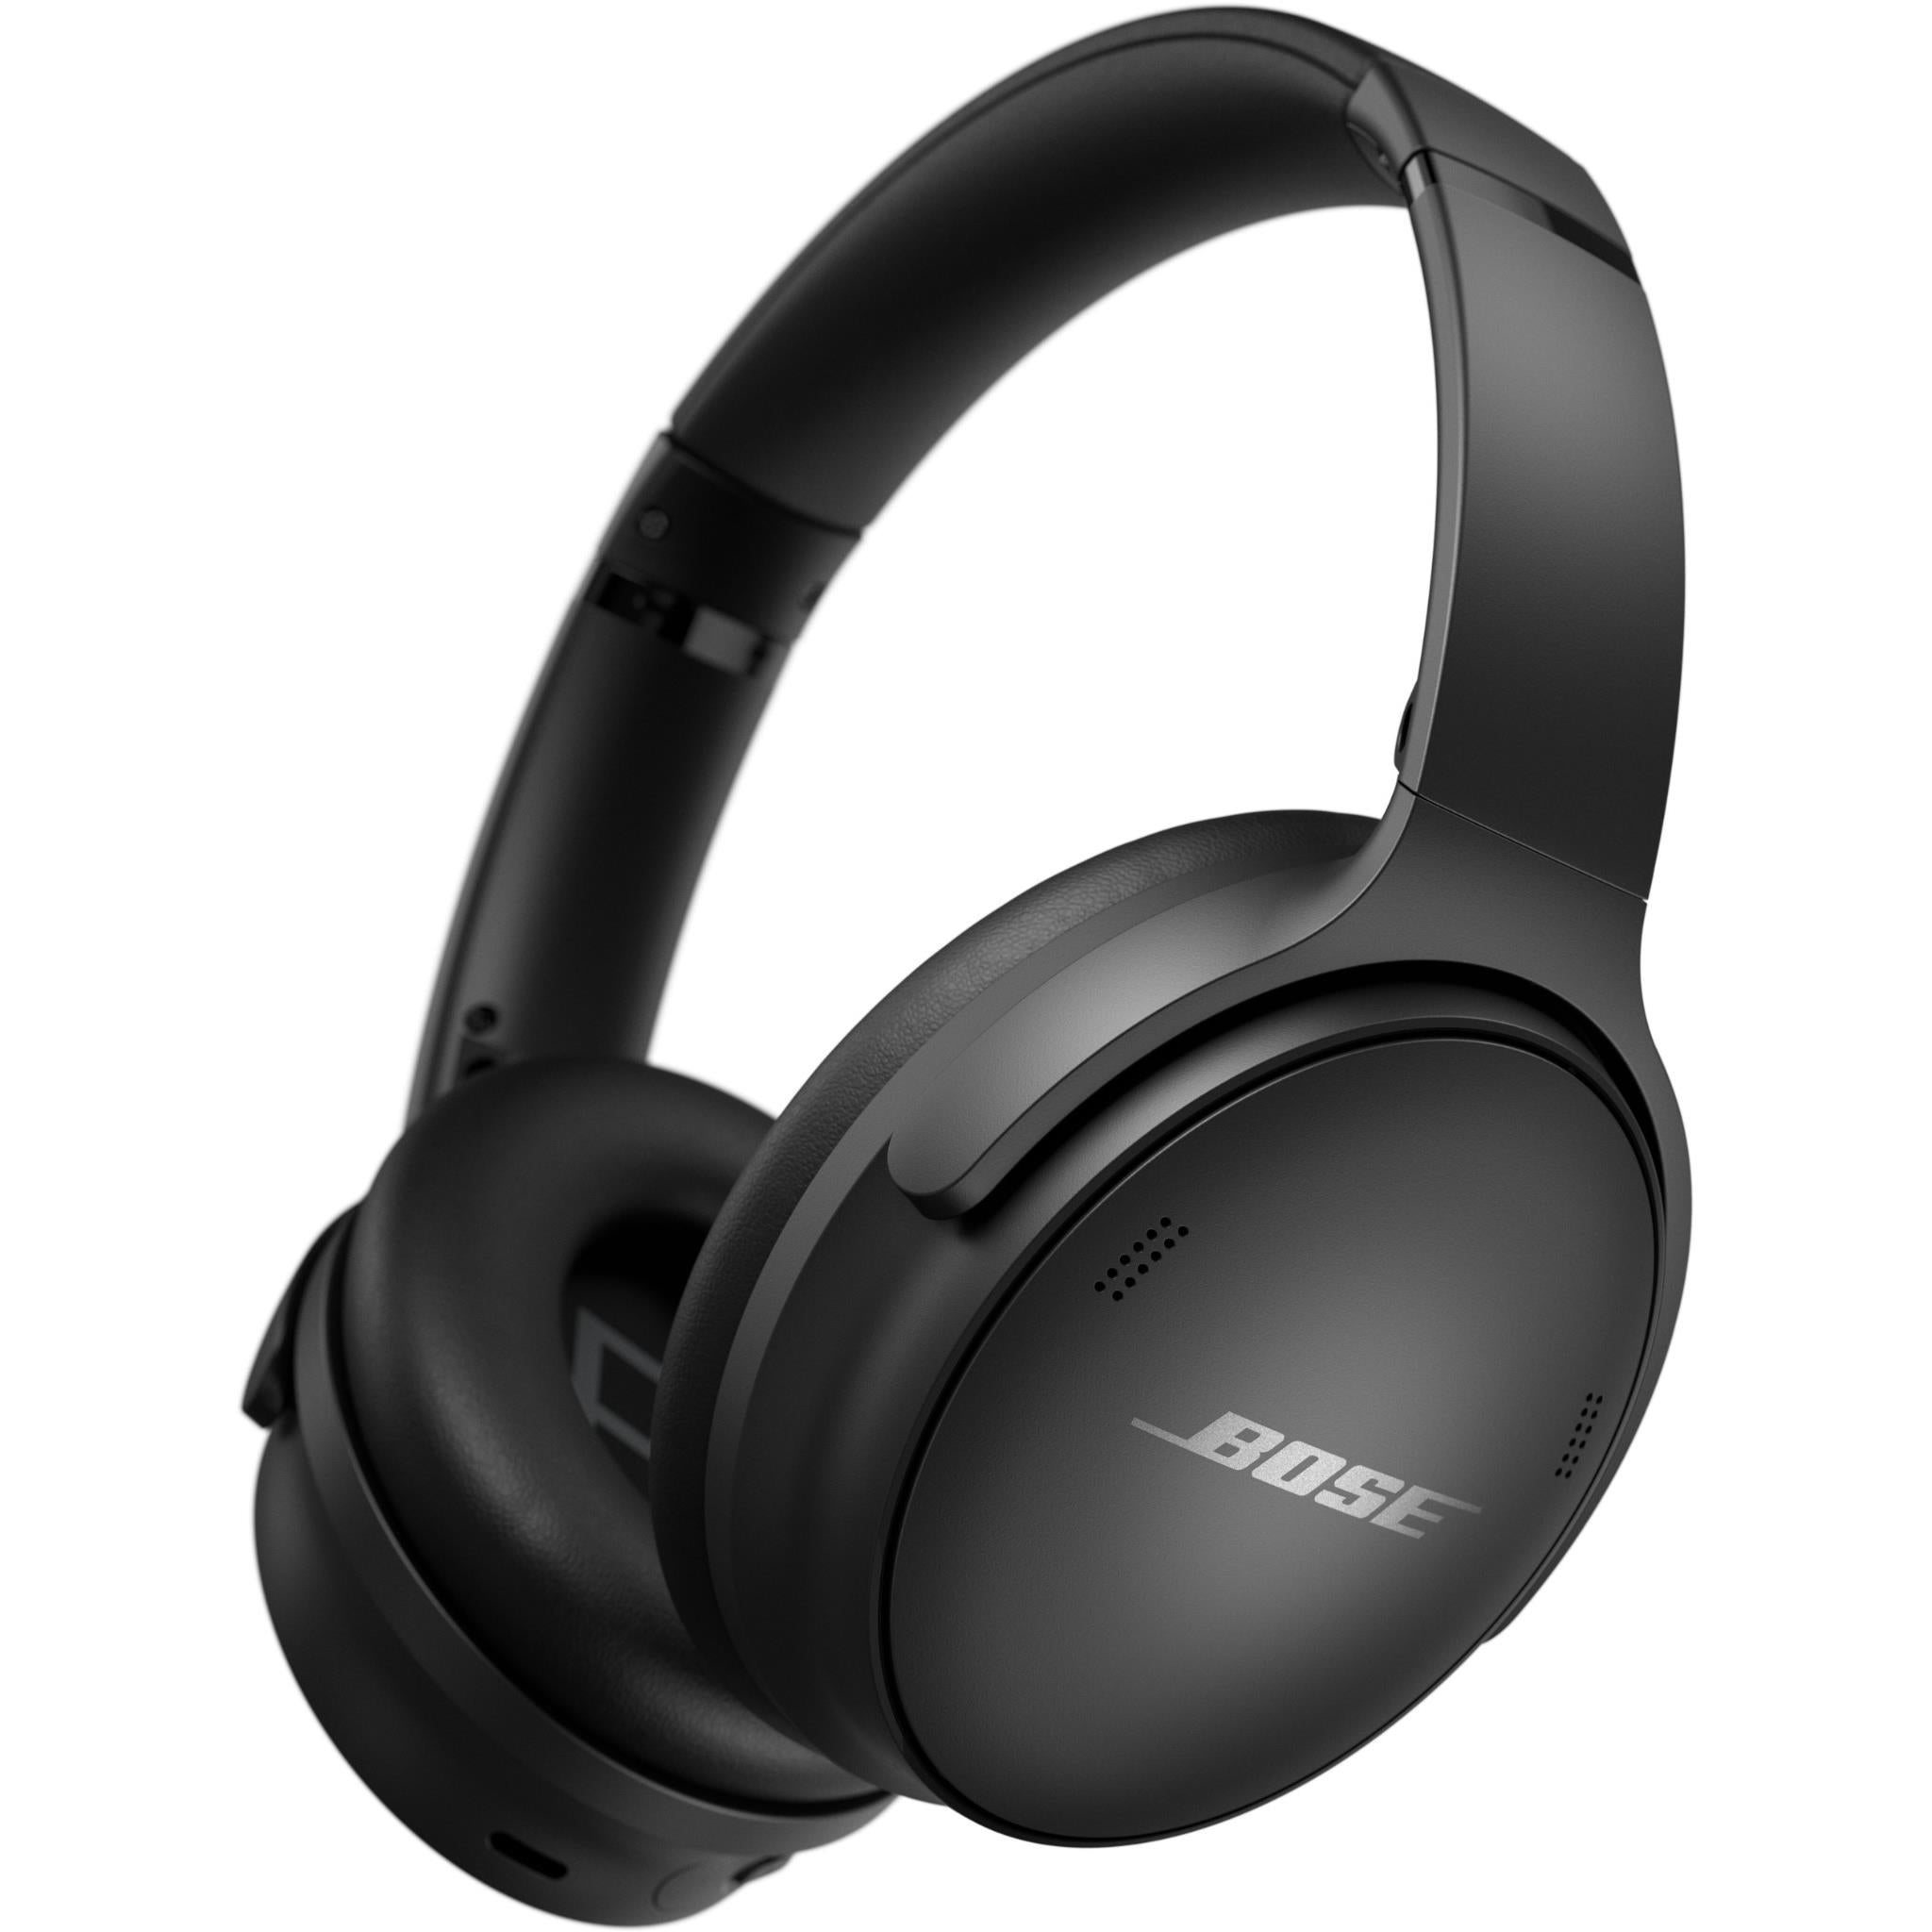 Bose QuietComfort 35 Series II Wireless Noise-Canceling Headphones